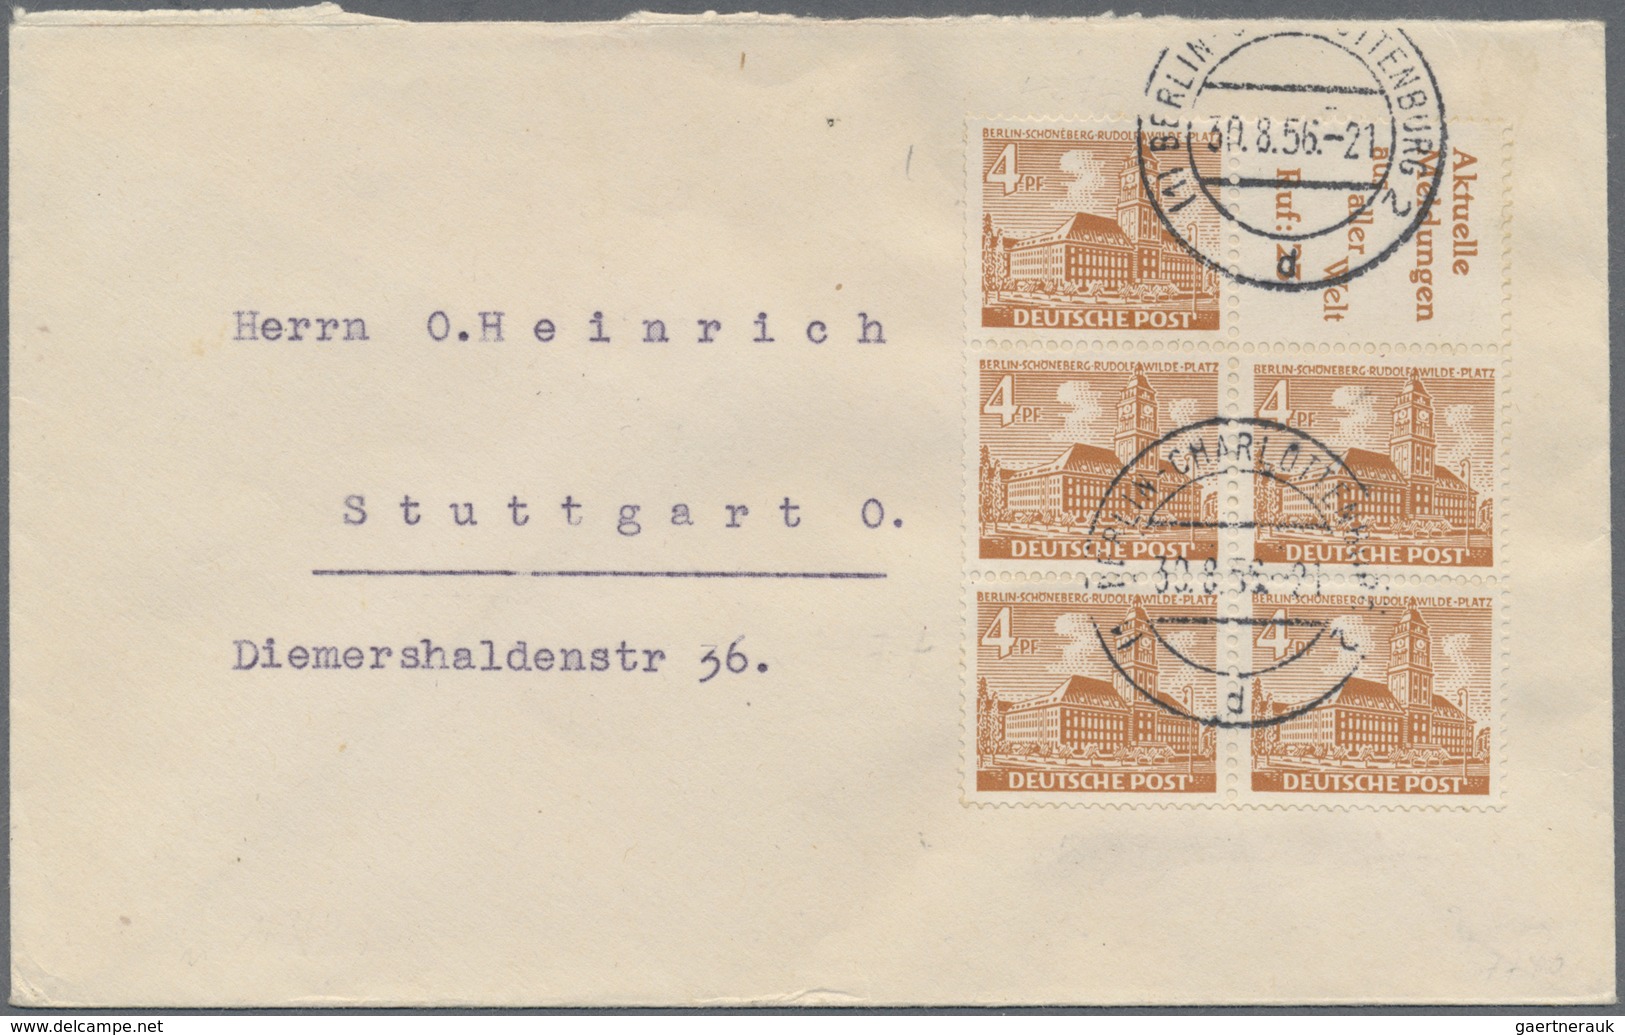 Br Berlin - Zusammendrucke: 1952, Heftchenblatt 5 X 4 Pf Gelbbraun + Reklamefeld R4 Aus MH 2, Portogere - Zusammendrucke